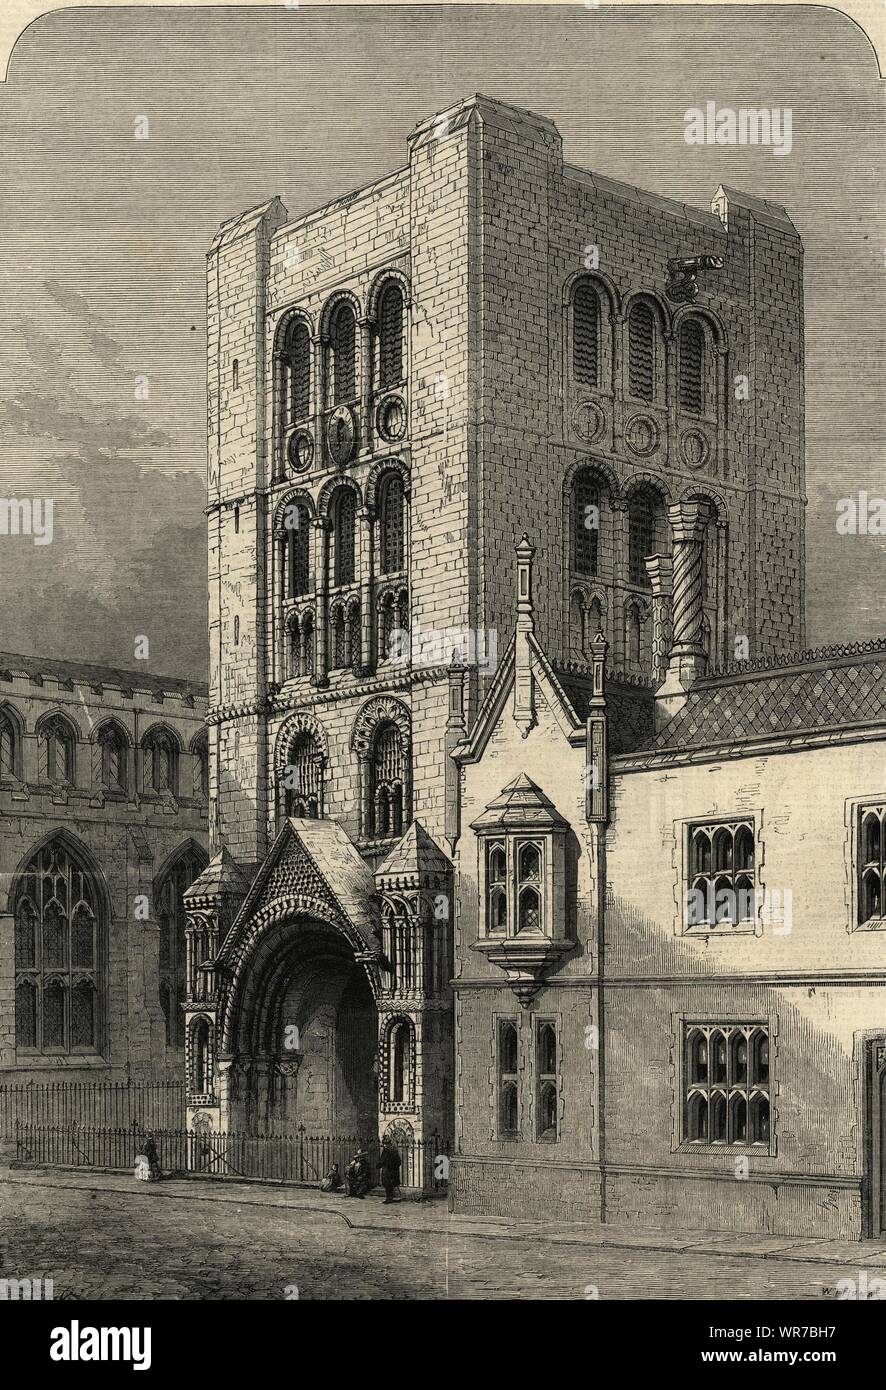 Der Normannische Turm, Bury St. Edmunds. Suffolk. Gebäude 1860 Antike ILN Seite Stockfoto